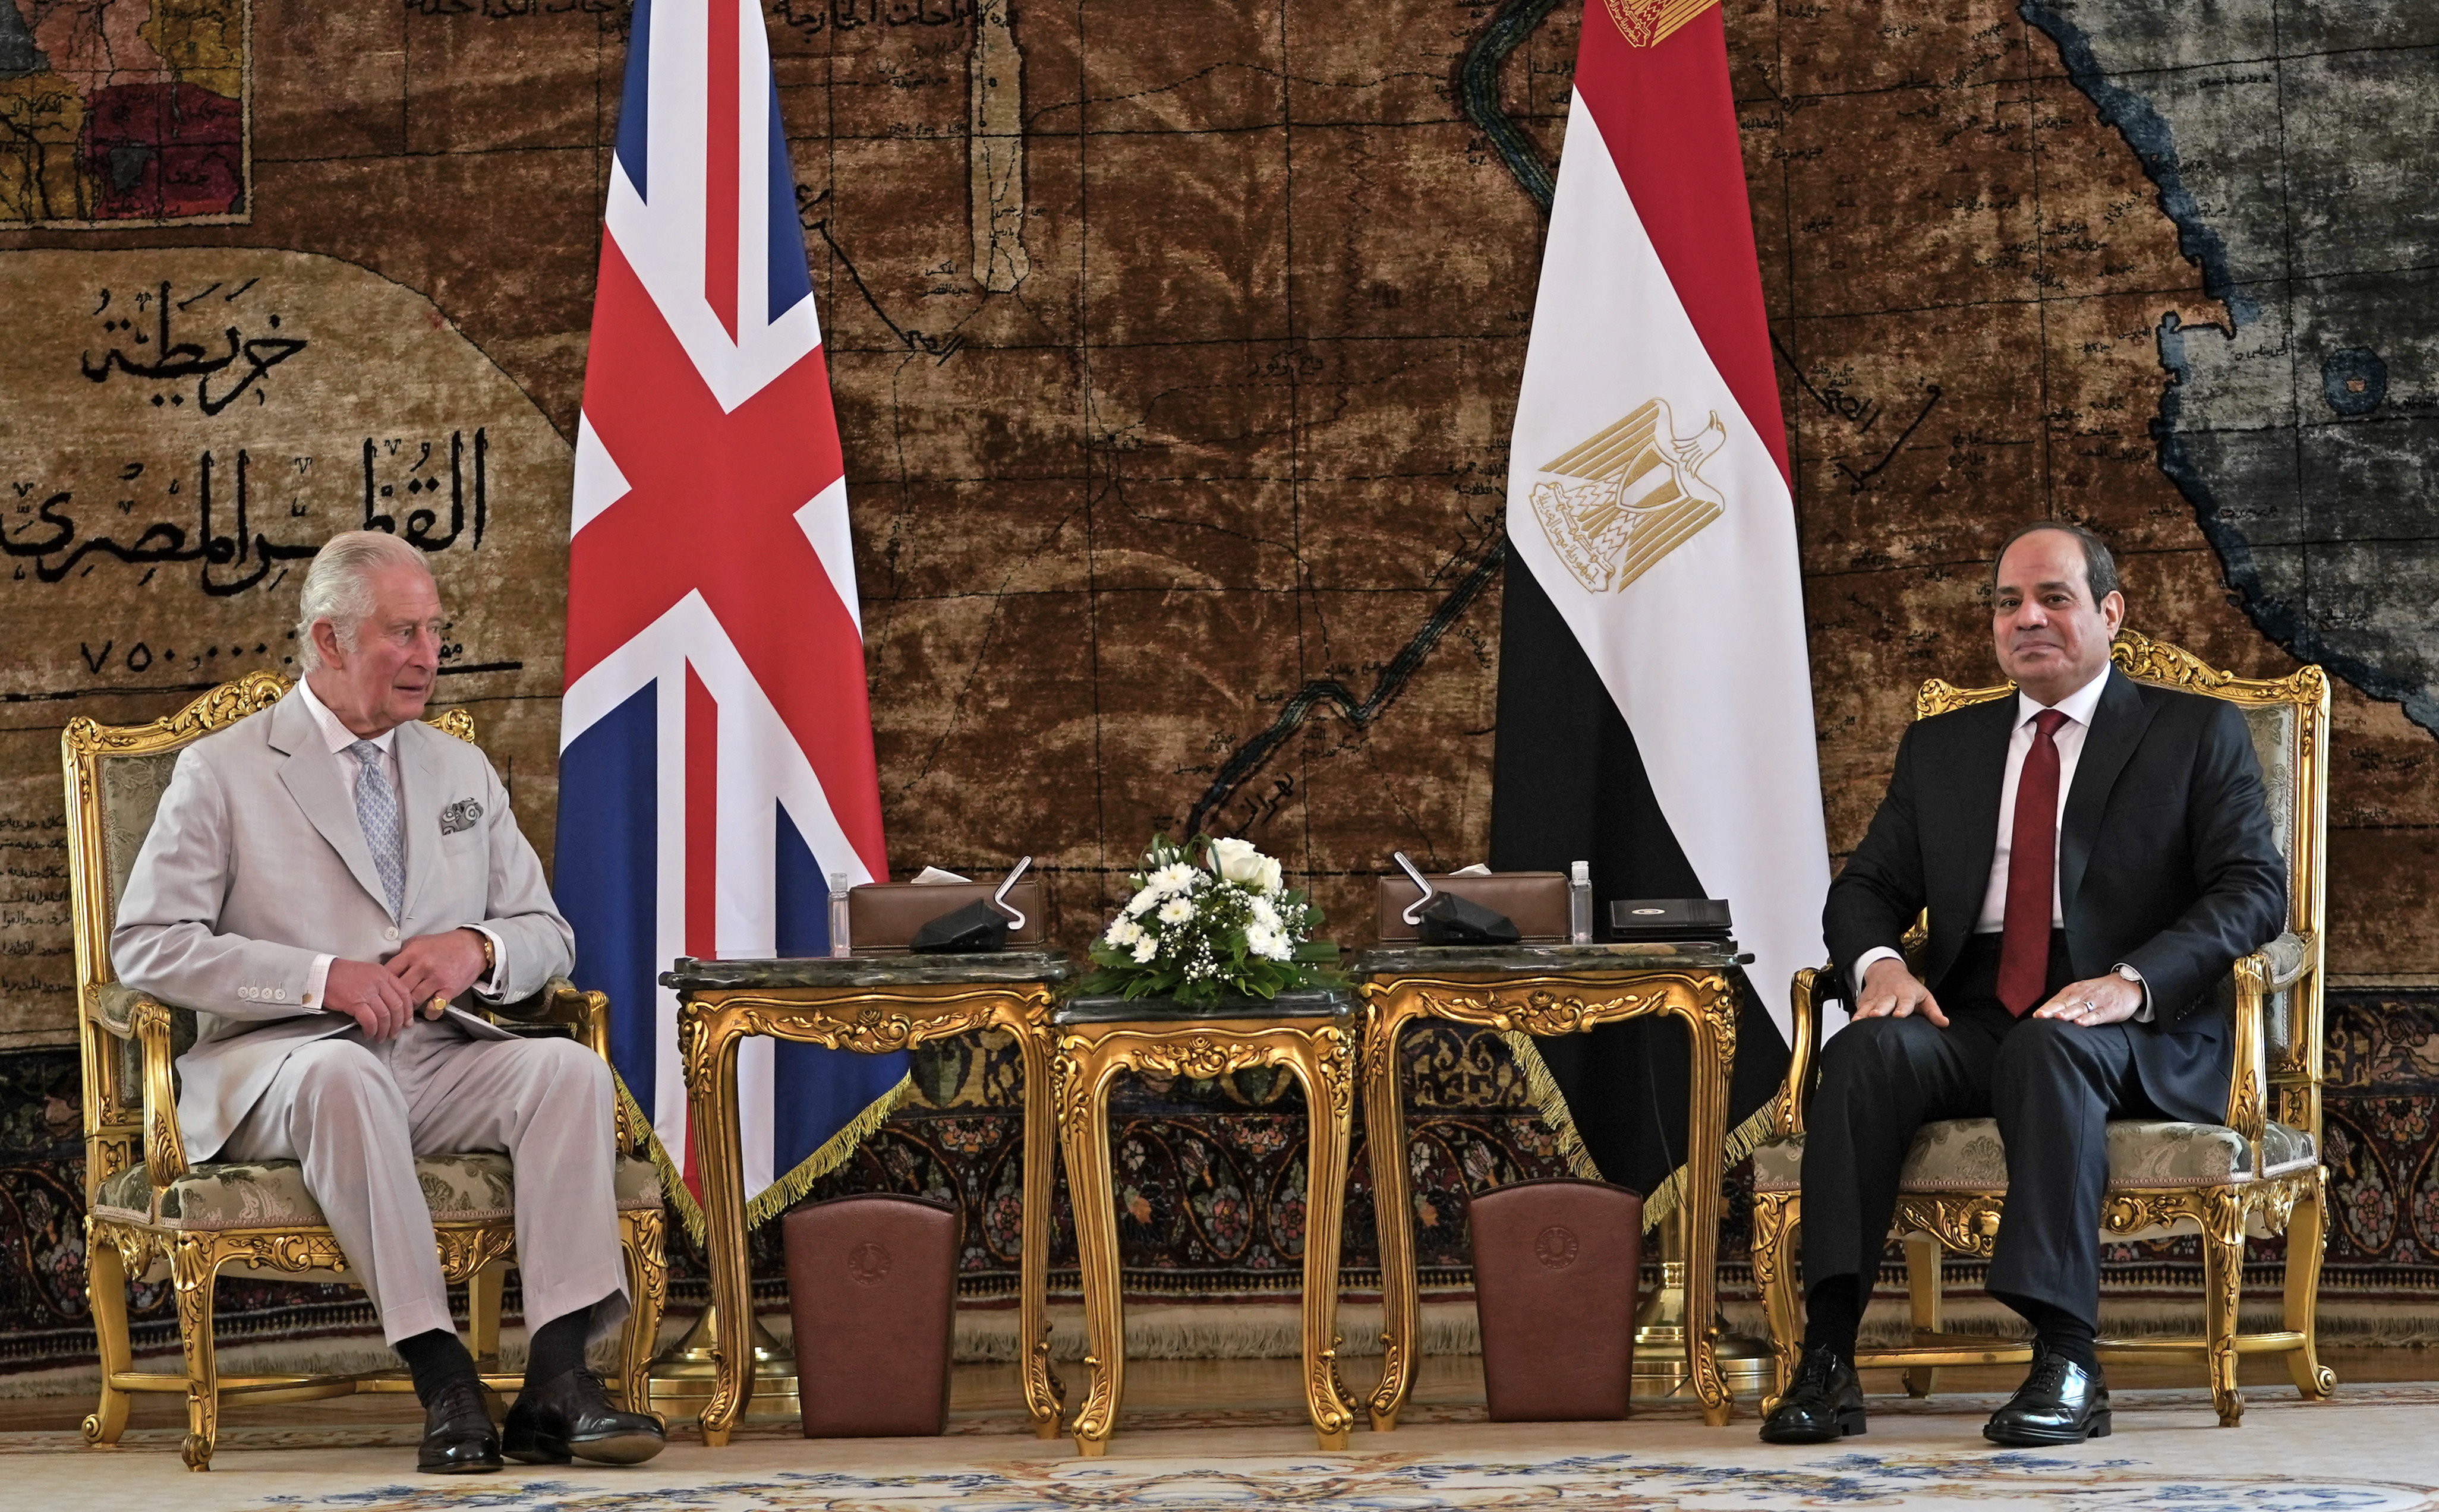 الرئيس المصري عبدالفتاح السيسي خلال استقباله اليوم بقصر الاتحادية الأمير تشارلز ولي عهد بريطانيا (د ب أ)